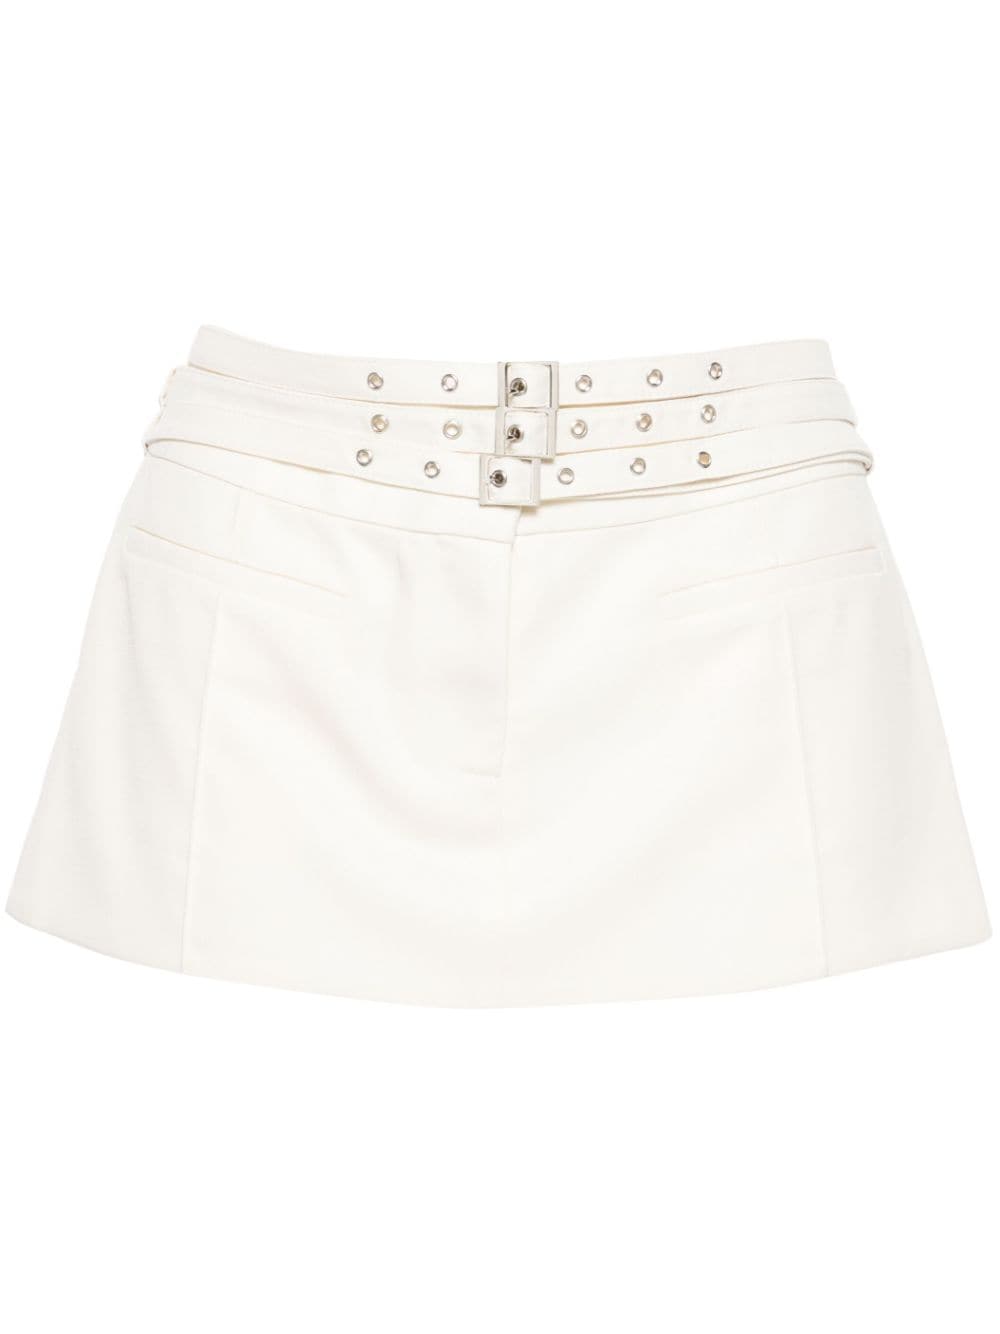 Aya Muse multiple-belts low-rise Miniskirt - Farfetch